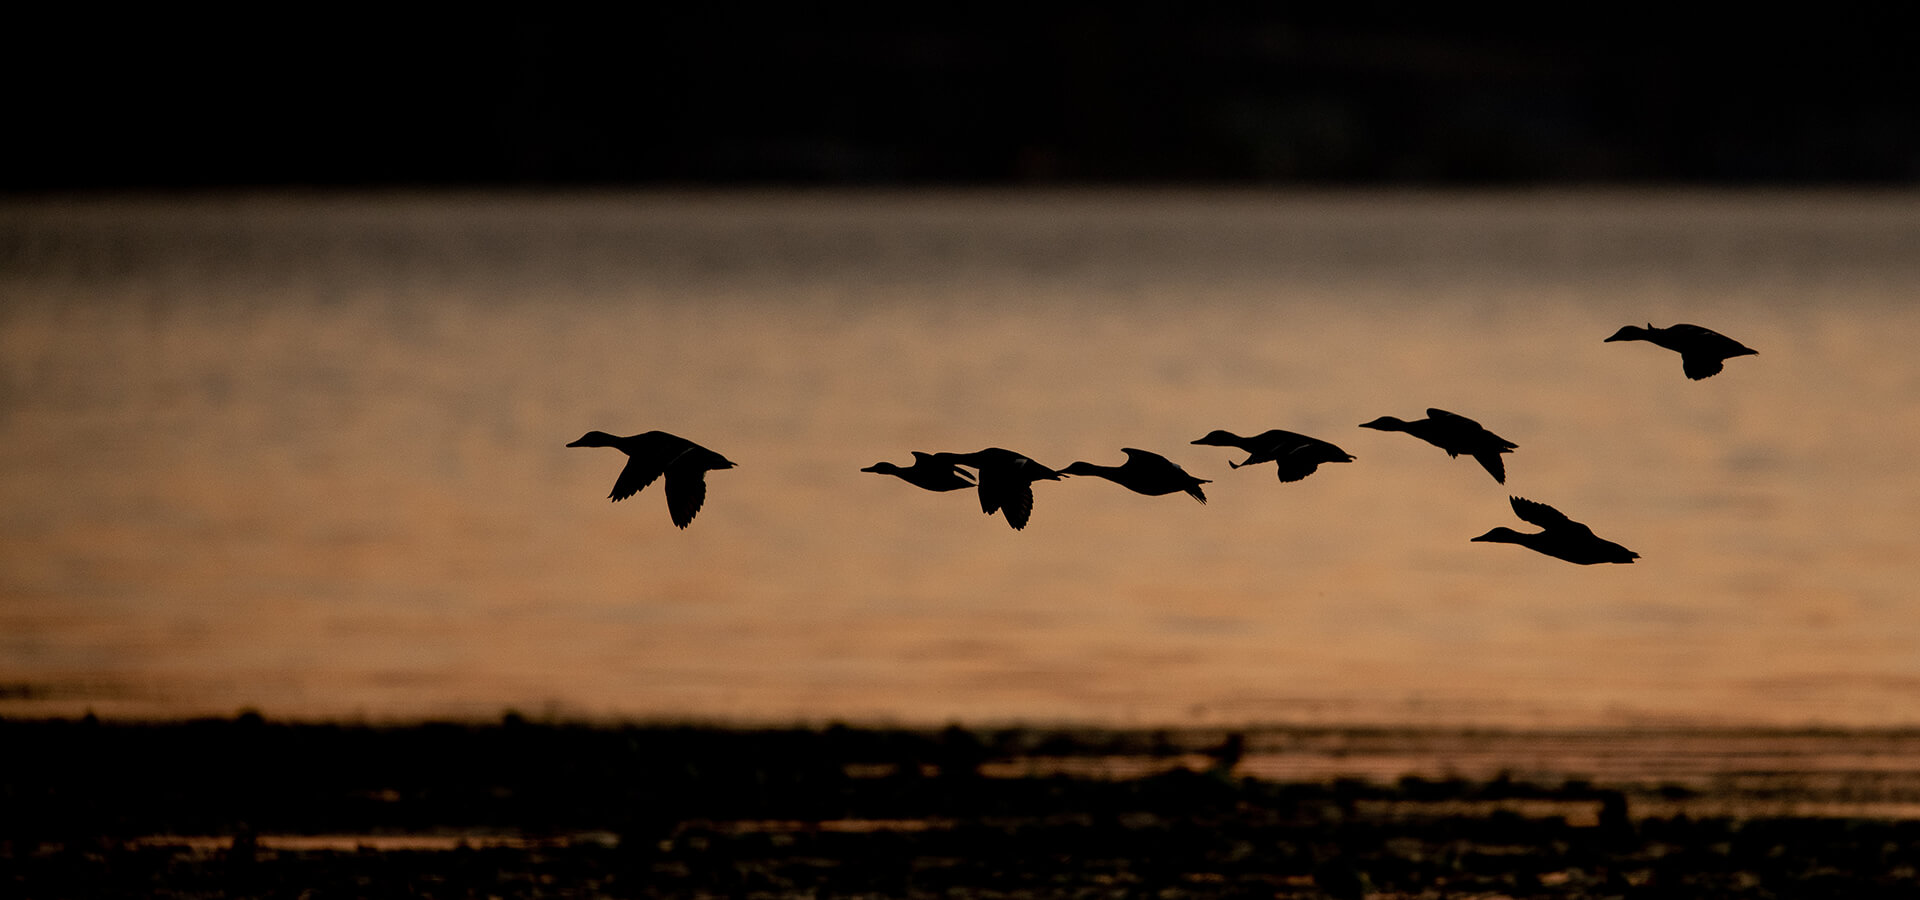 Ducks flying at dusk.